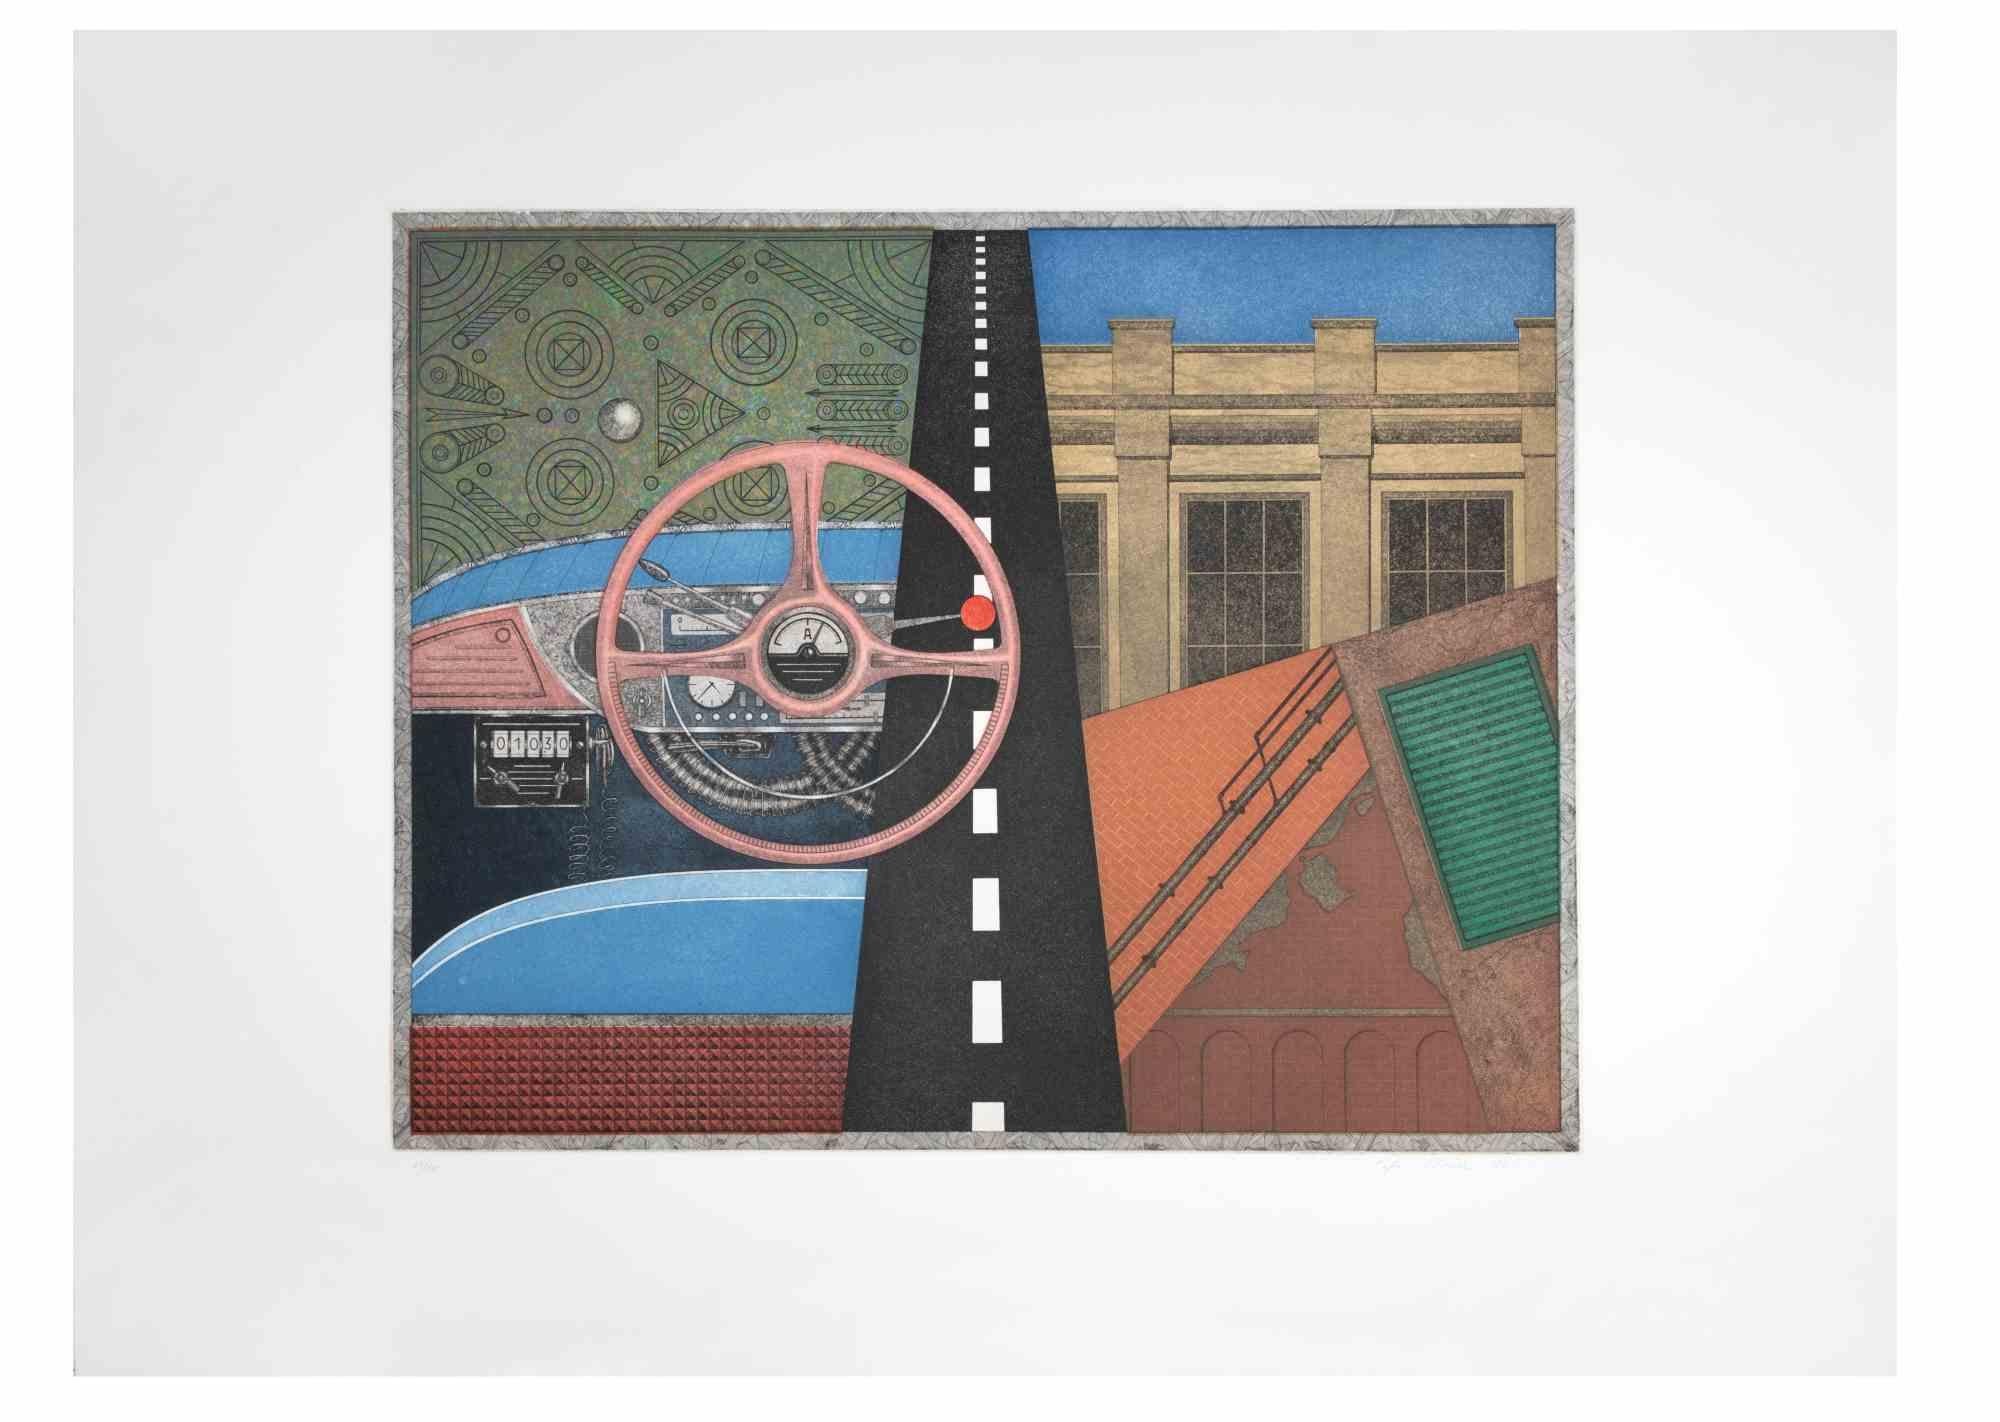 Taxi: Lenkrad ist ein zeitgenössisches Kunstwerk des Künstlers Fifo Stricker aus dem Jahr 1982.

Gemischte farbige Aquatinta und Radierung. 

Vom Künstler am rechten unteren Rand handsigniert und datiert.

Am linken unteren Rand nummeriert. Auflage